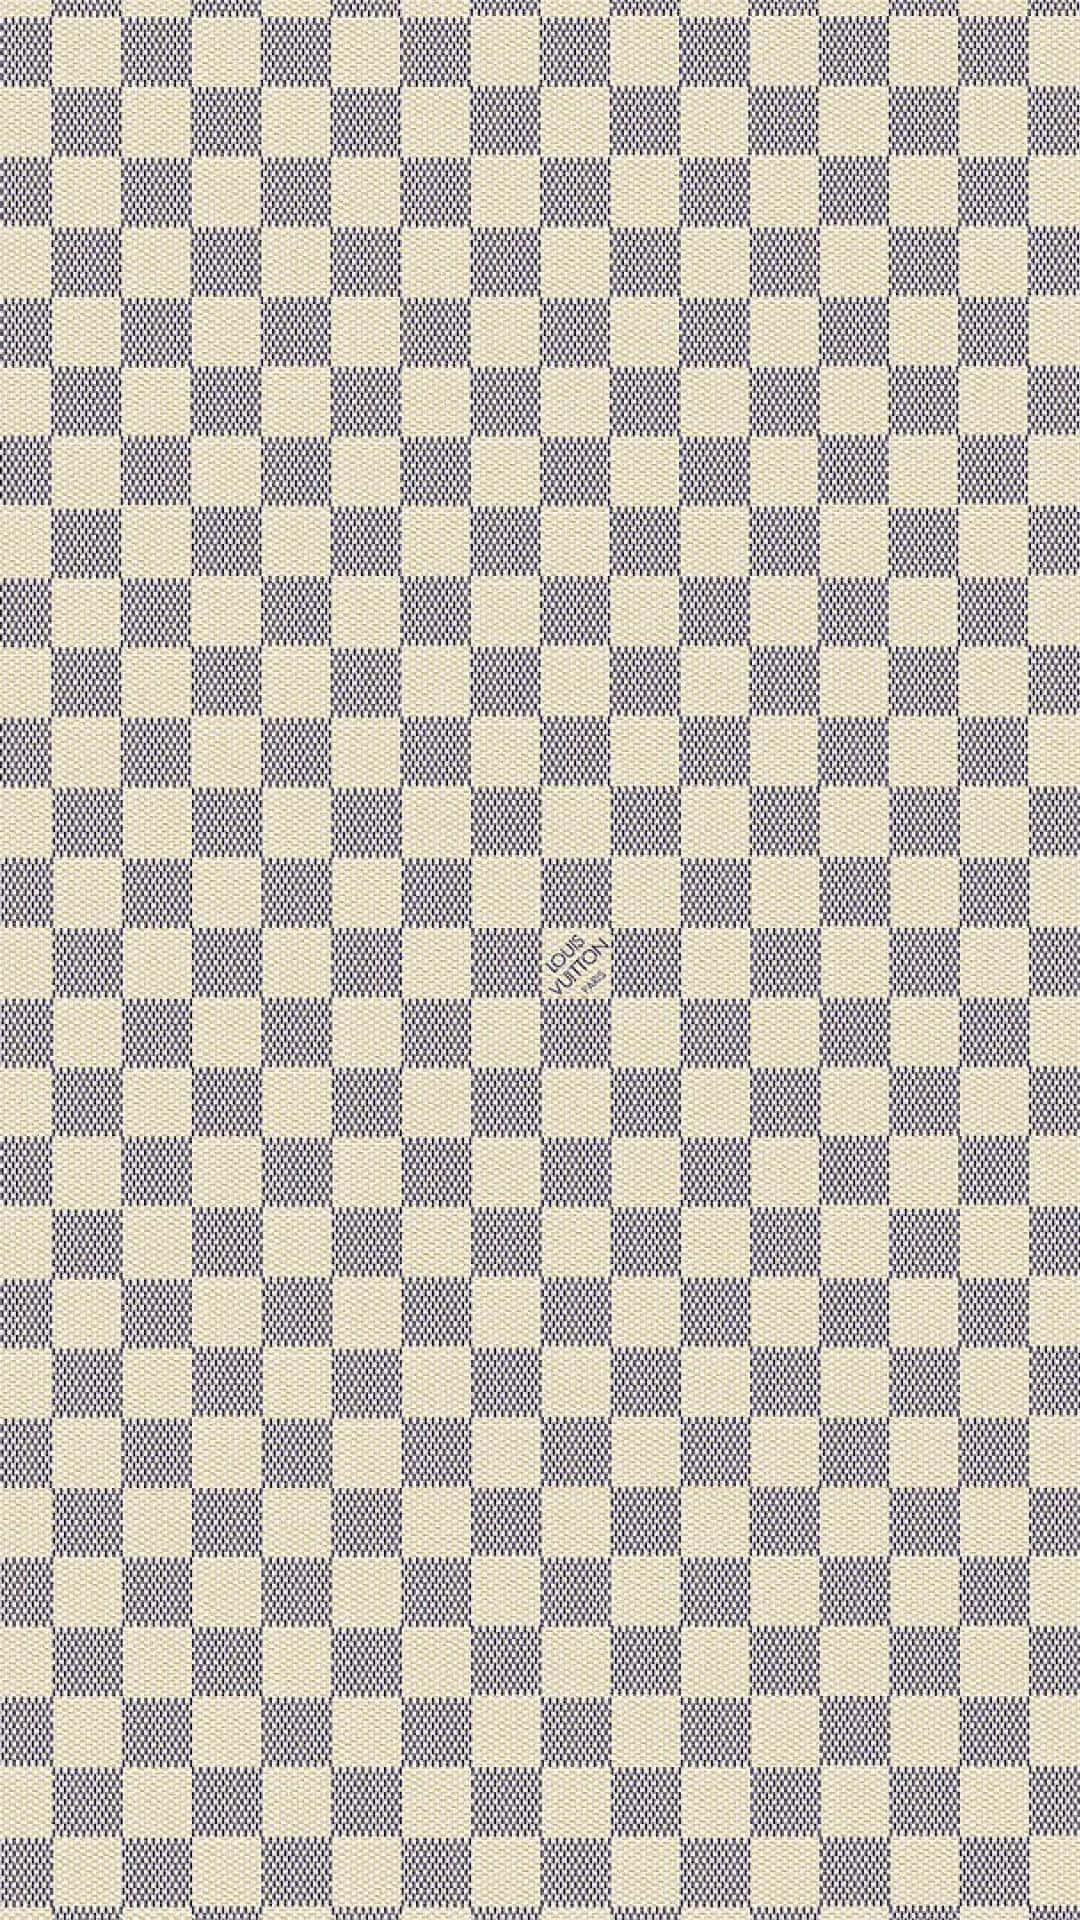 Checkered Designer Art Wallpaper